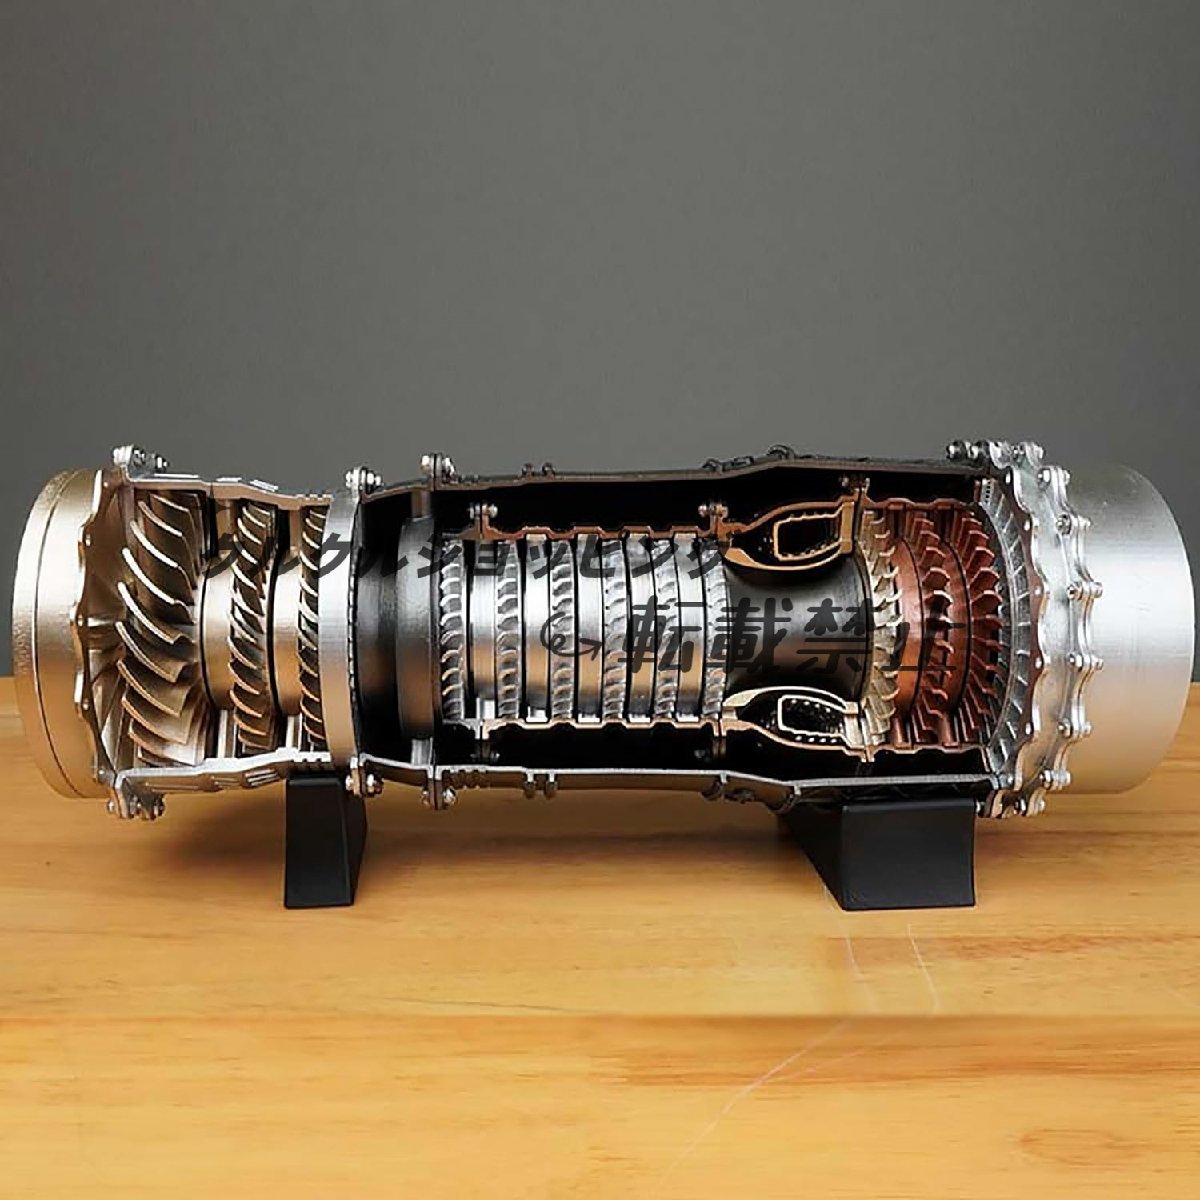 航空機エンジンシミュレーション電気モデル、実行するミニ戦闘機ターボファンエンジンモデルキット、DIY組み立て金属モデルエンジン。_画像3